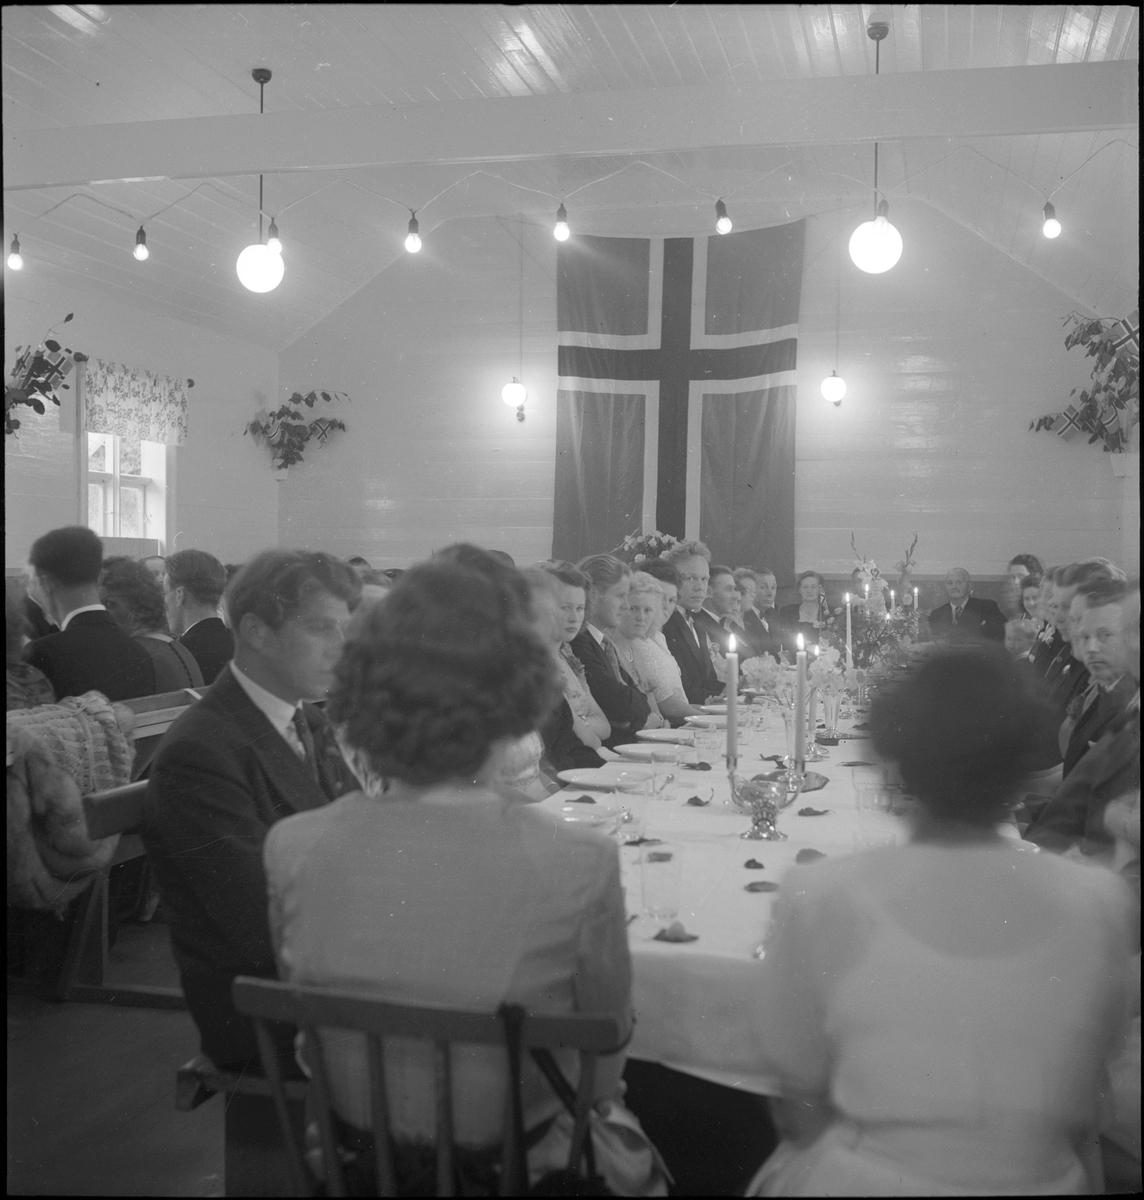 Brudeparet og gjester til bords i en bryllupsfest.